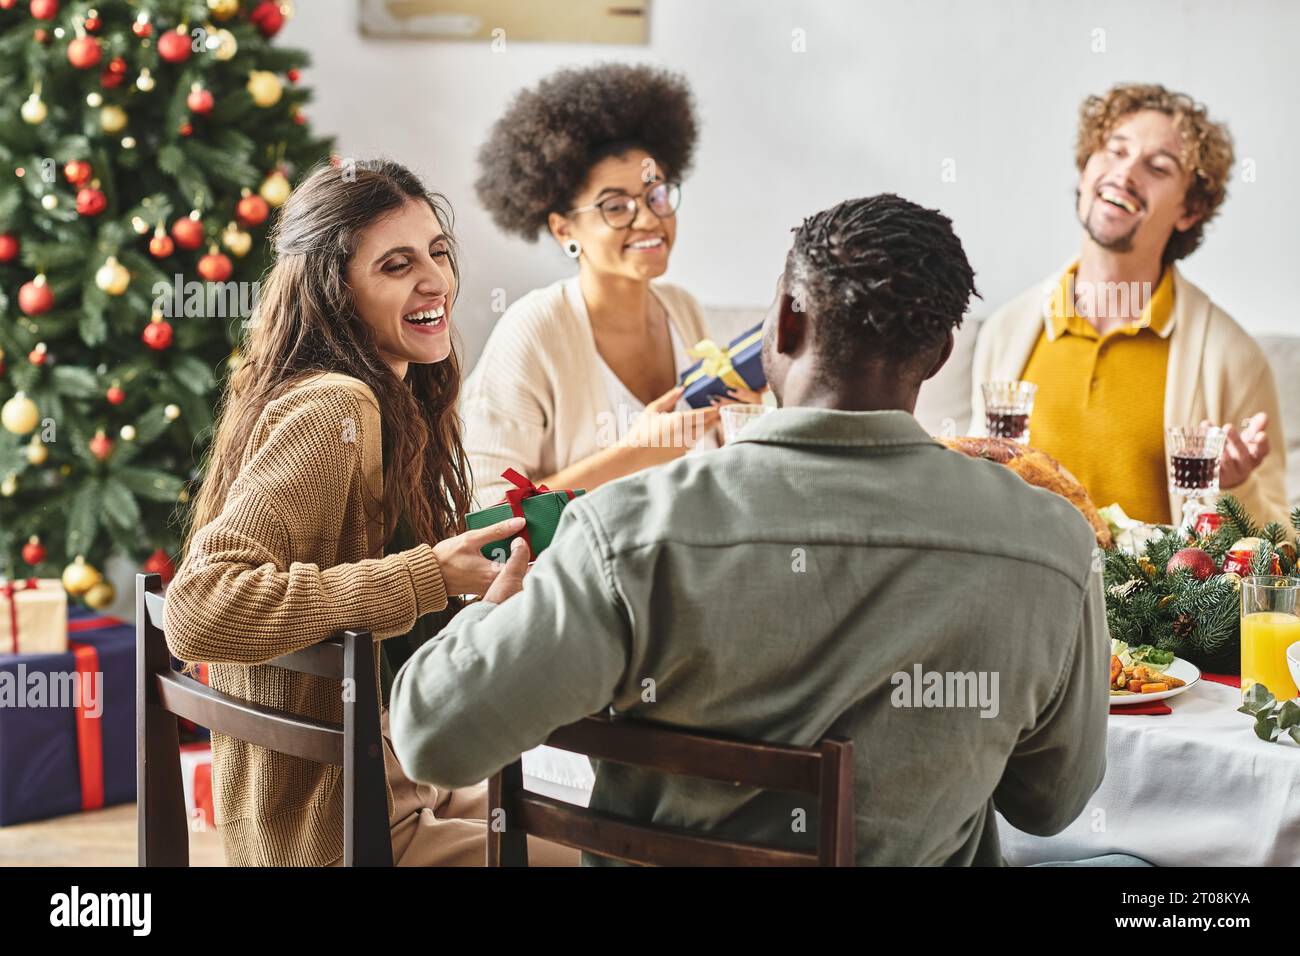 Große, fröhliche Familie lacht und sieht sich beim Weihnachtsessen an, während sie Geschenke austauscht Stockfoto